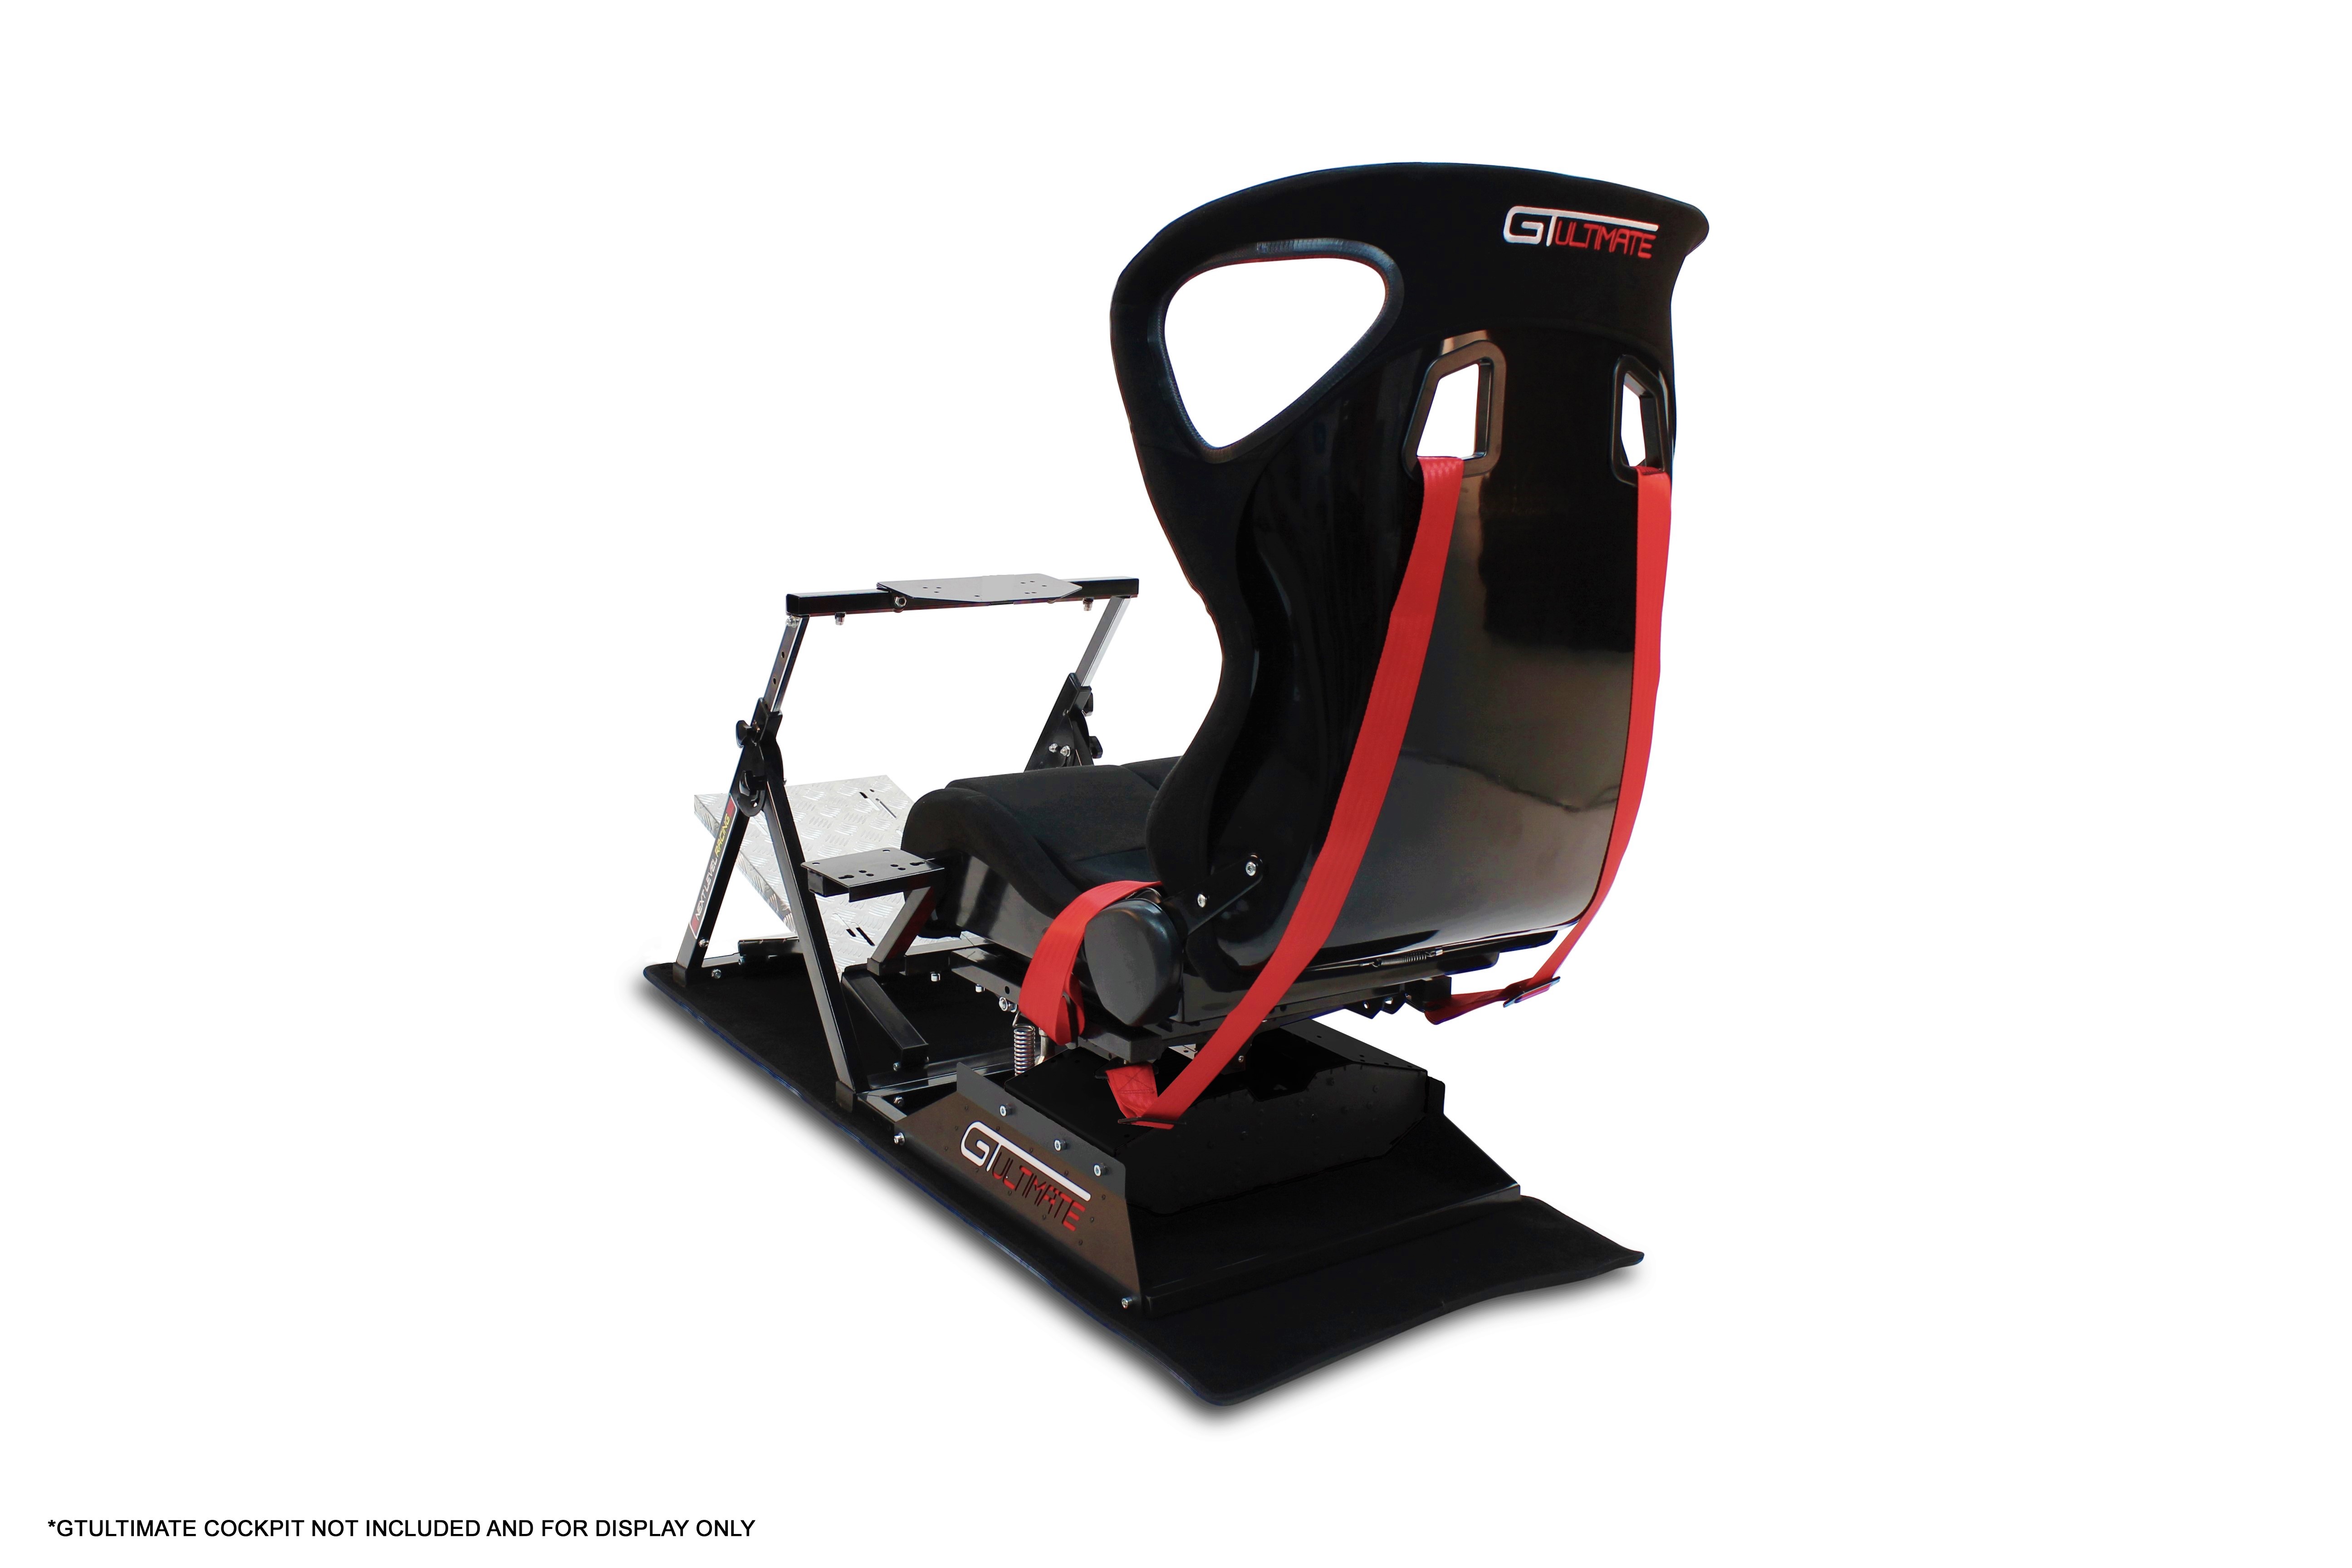 Shifter et frein à main tout en un !  Objectif-Racing - SimRacing sur PC,  PlayStation et Xbox One - Actualités et essais